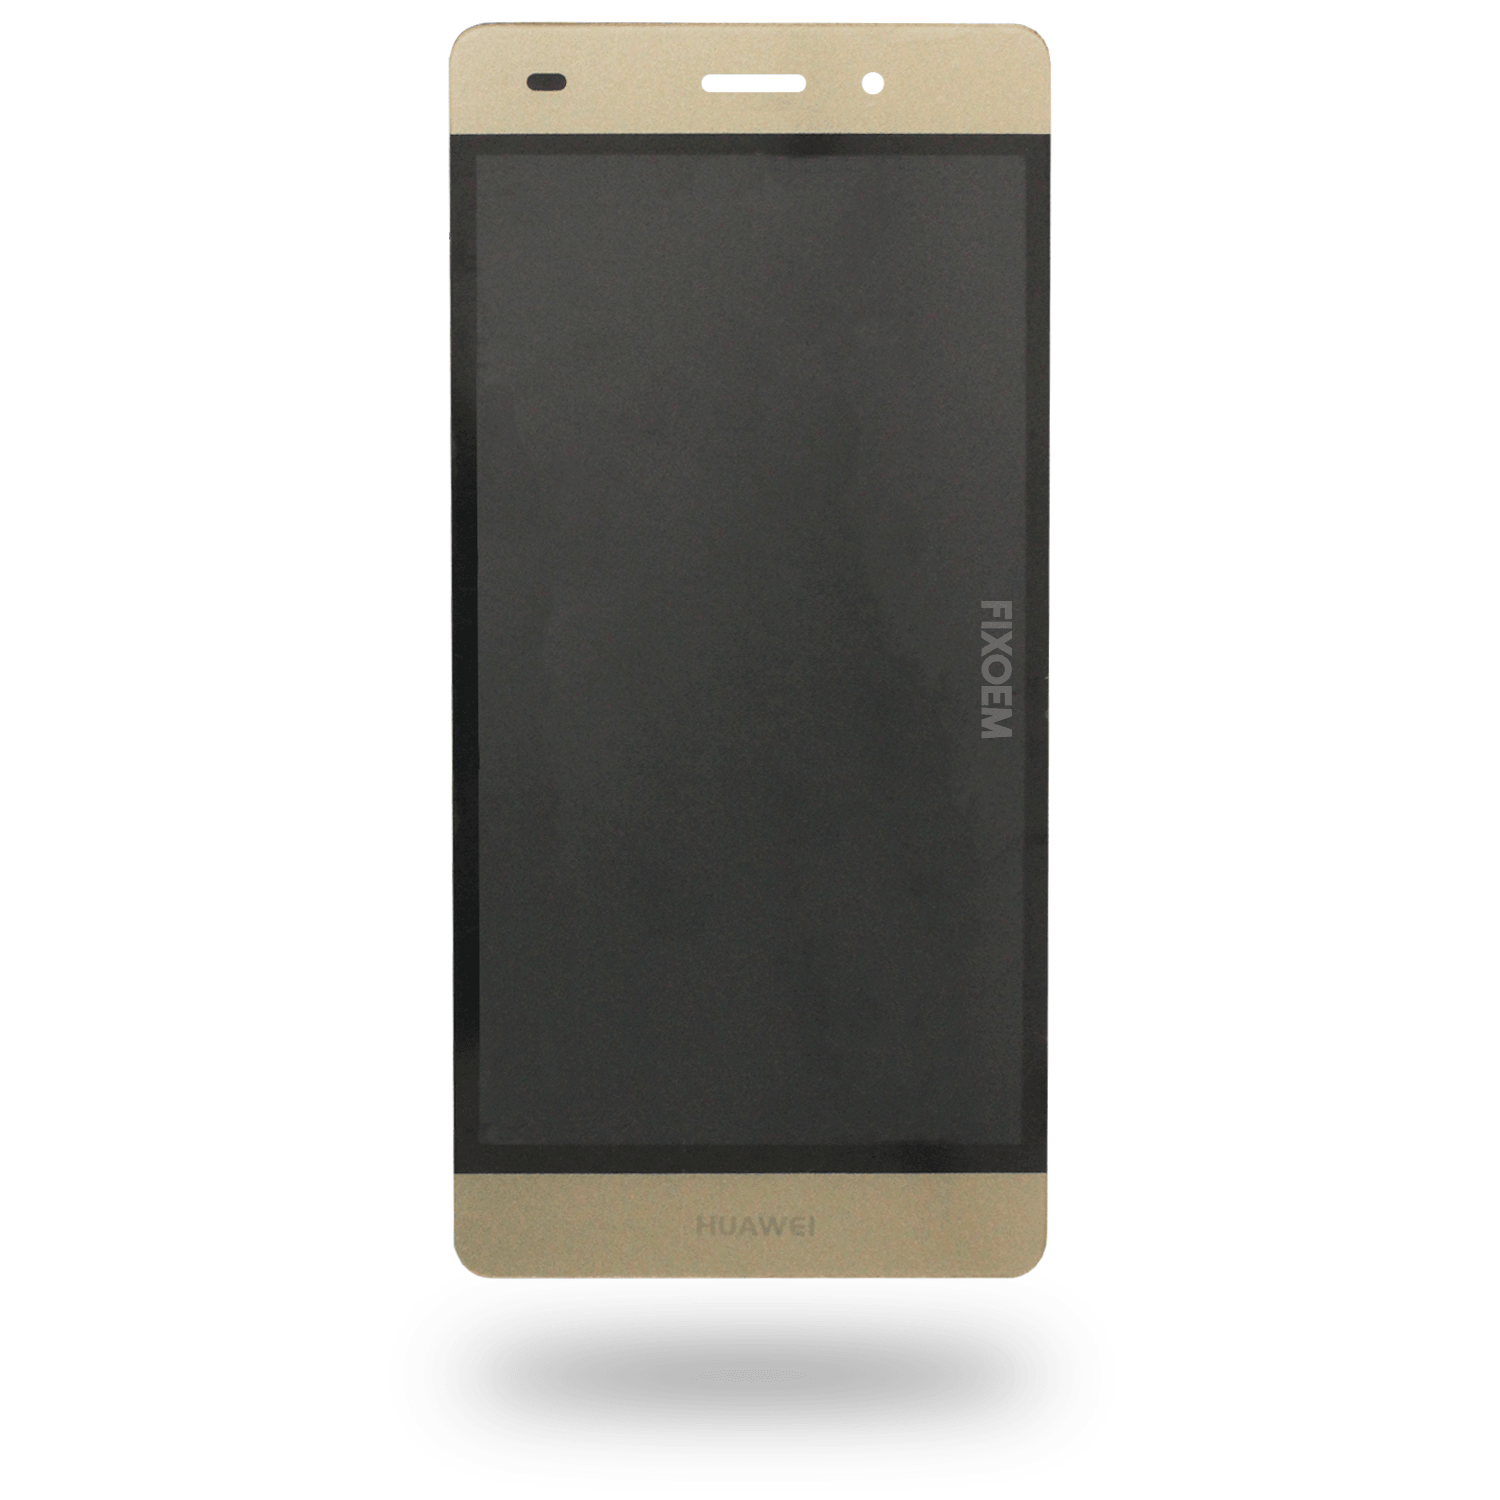 Display Huawei P8 Lite IPS Ale-L23 Ale-L21 Ale-L02 a solo $ 210.00 Refaccion y puestos celulares, refurbish y microelectronica.- FixOEM